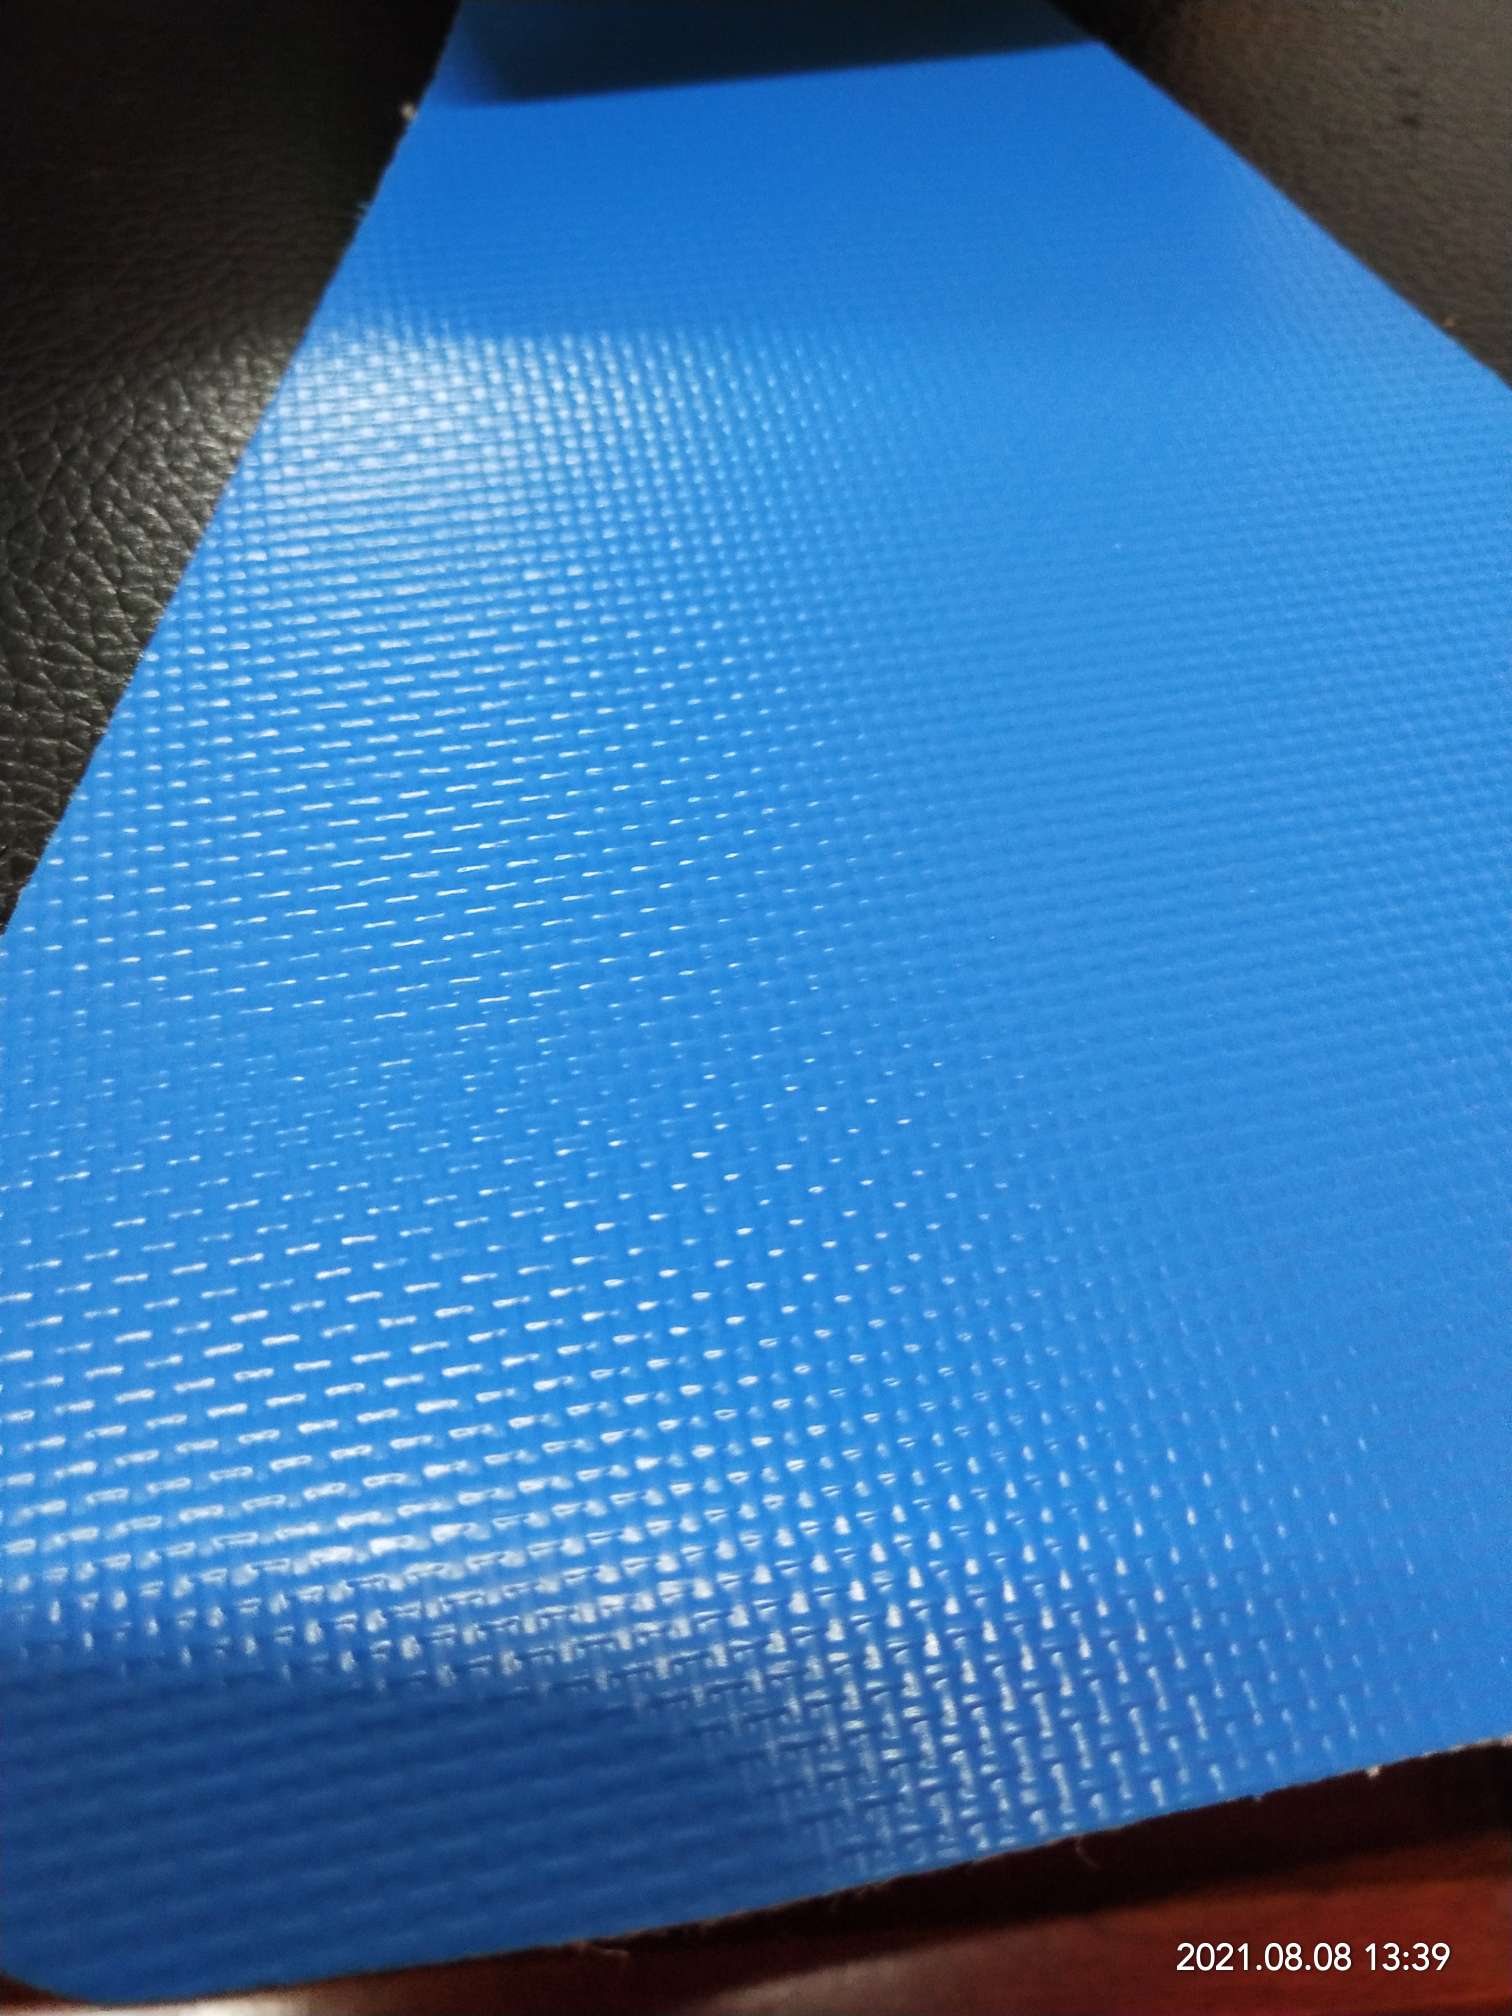 优质雾面0.45mm厚浅蓝色PVC夹网布  箱包布  机器罩家具罩  体育游乐产品  格种箱包袋专用面料详情图2